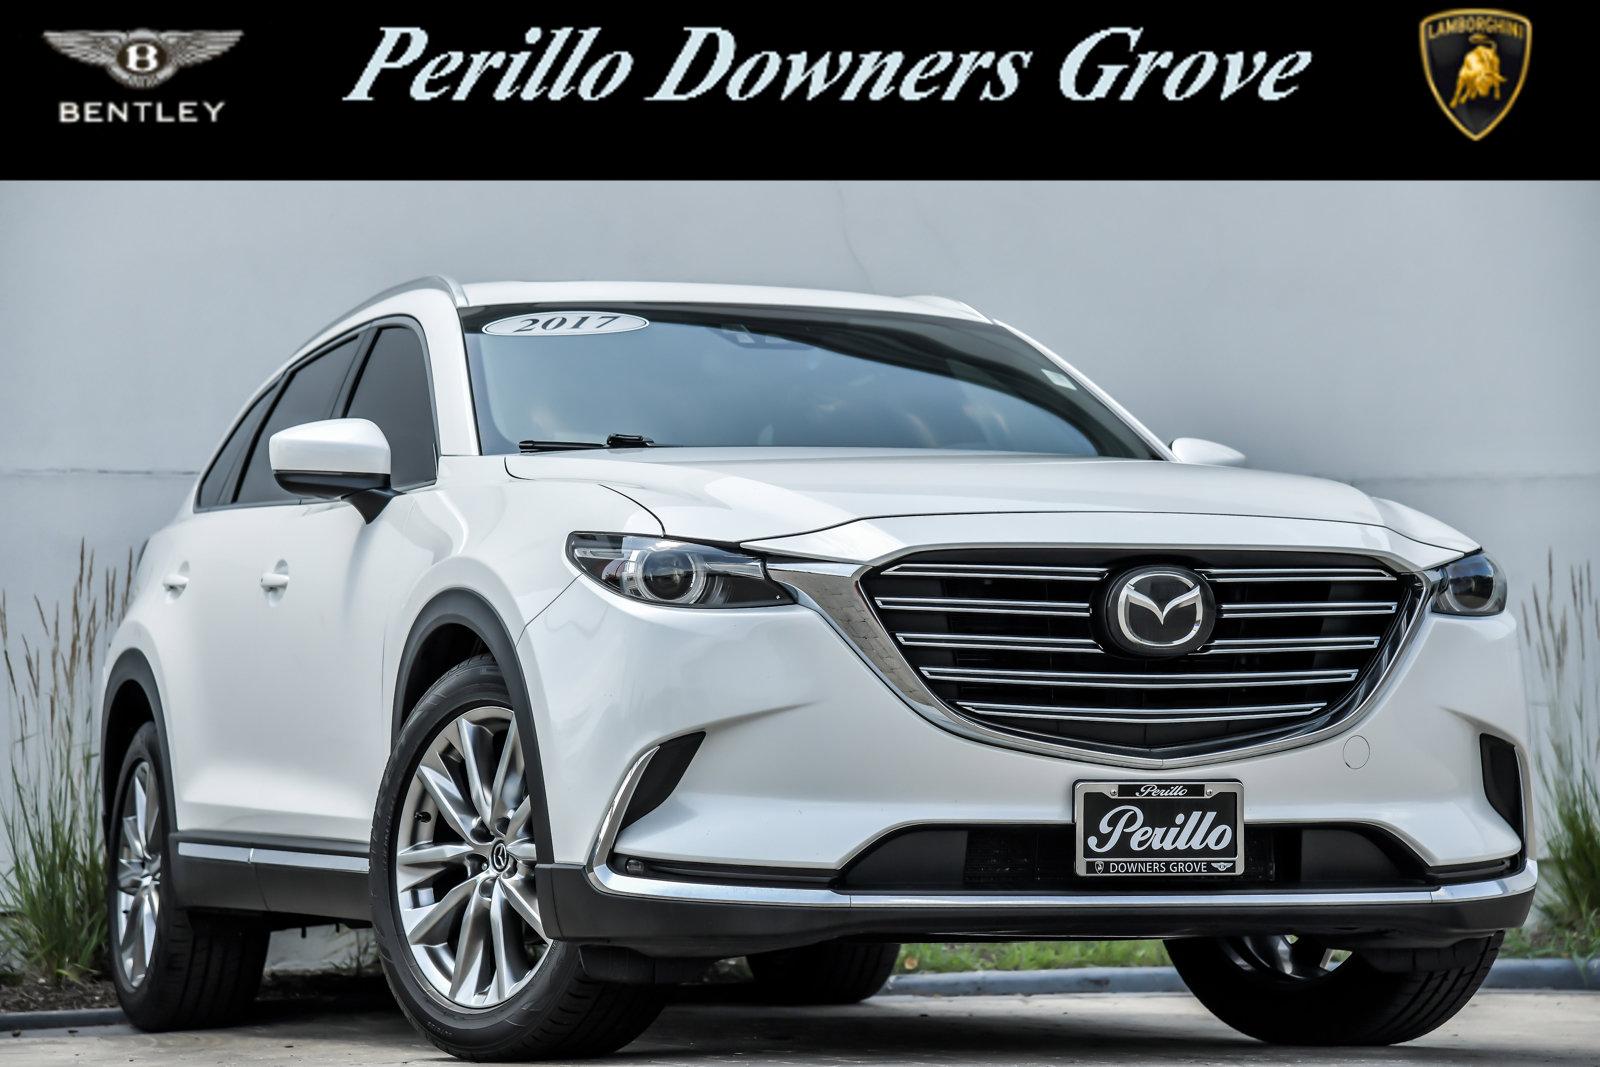 Used 2017 Mazda CX-9 Signature | Downers Grove, IL